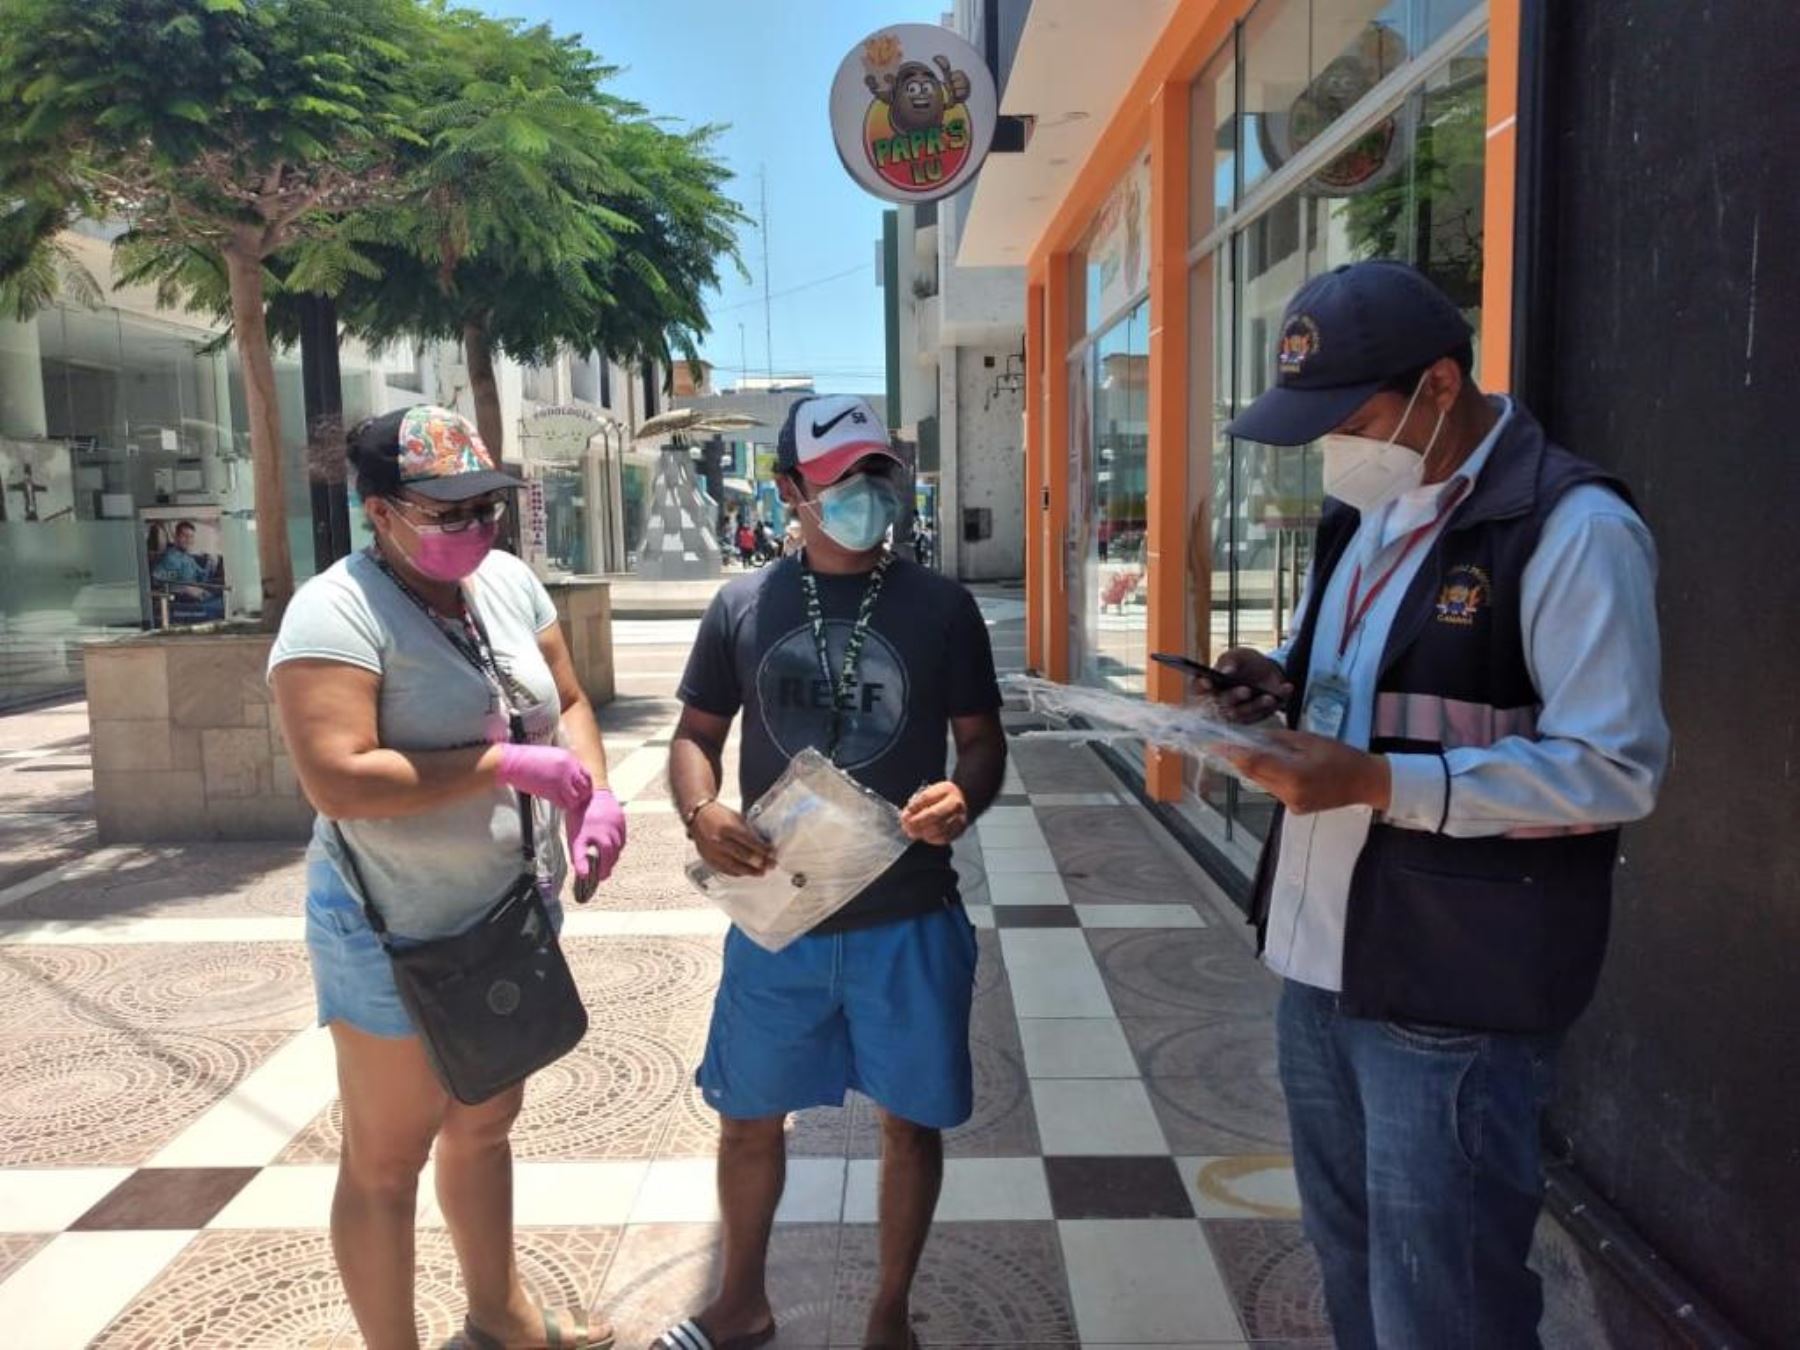 MTC distribuirá más de 15,000 protectores faciales a pobladores de la provincia de Camaná, en Arequipa, usuarios del servicio de transporte urbano. ANDINA/Difusión